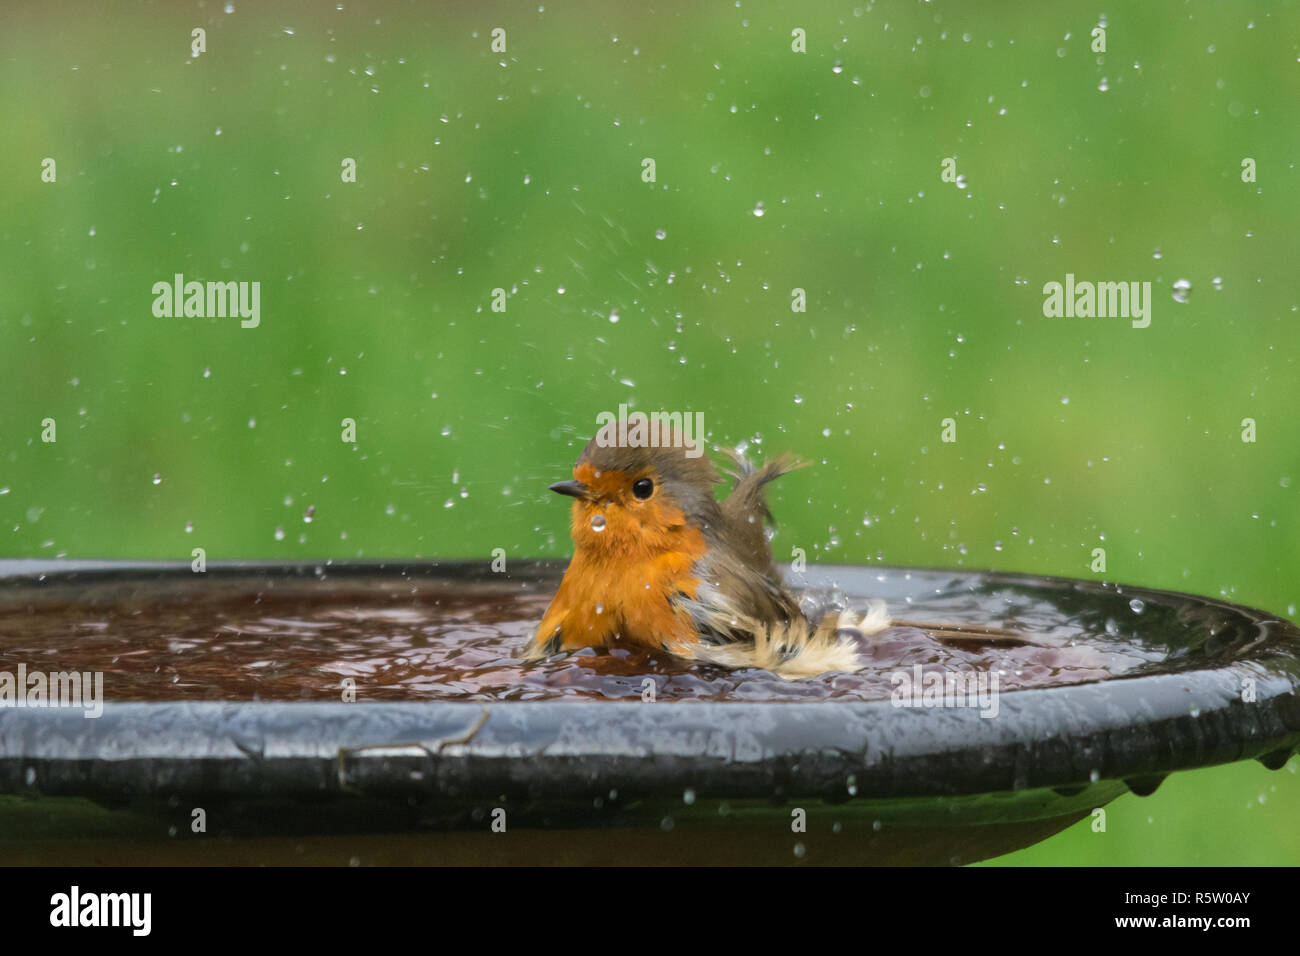 Robin (Erithacus rubecula), piccolo uccello avente una vasca da bagno, giardino di fauna animale il senso dell'umorismo umorismo Foto Stock